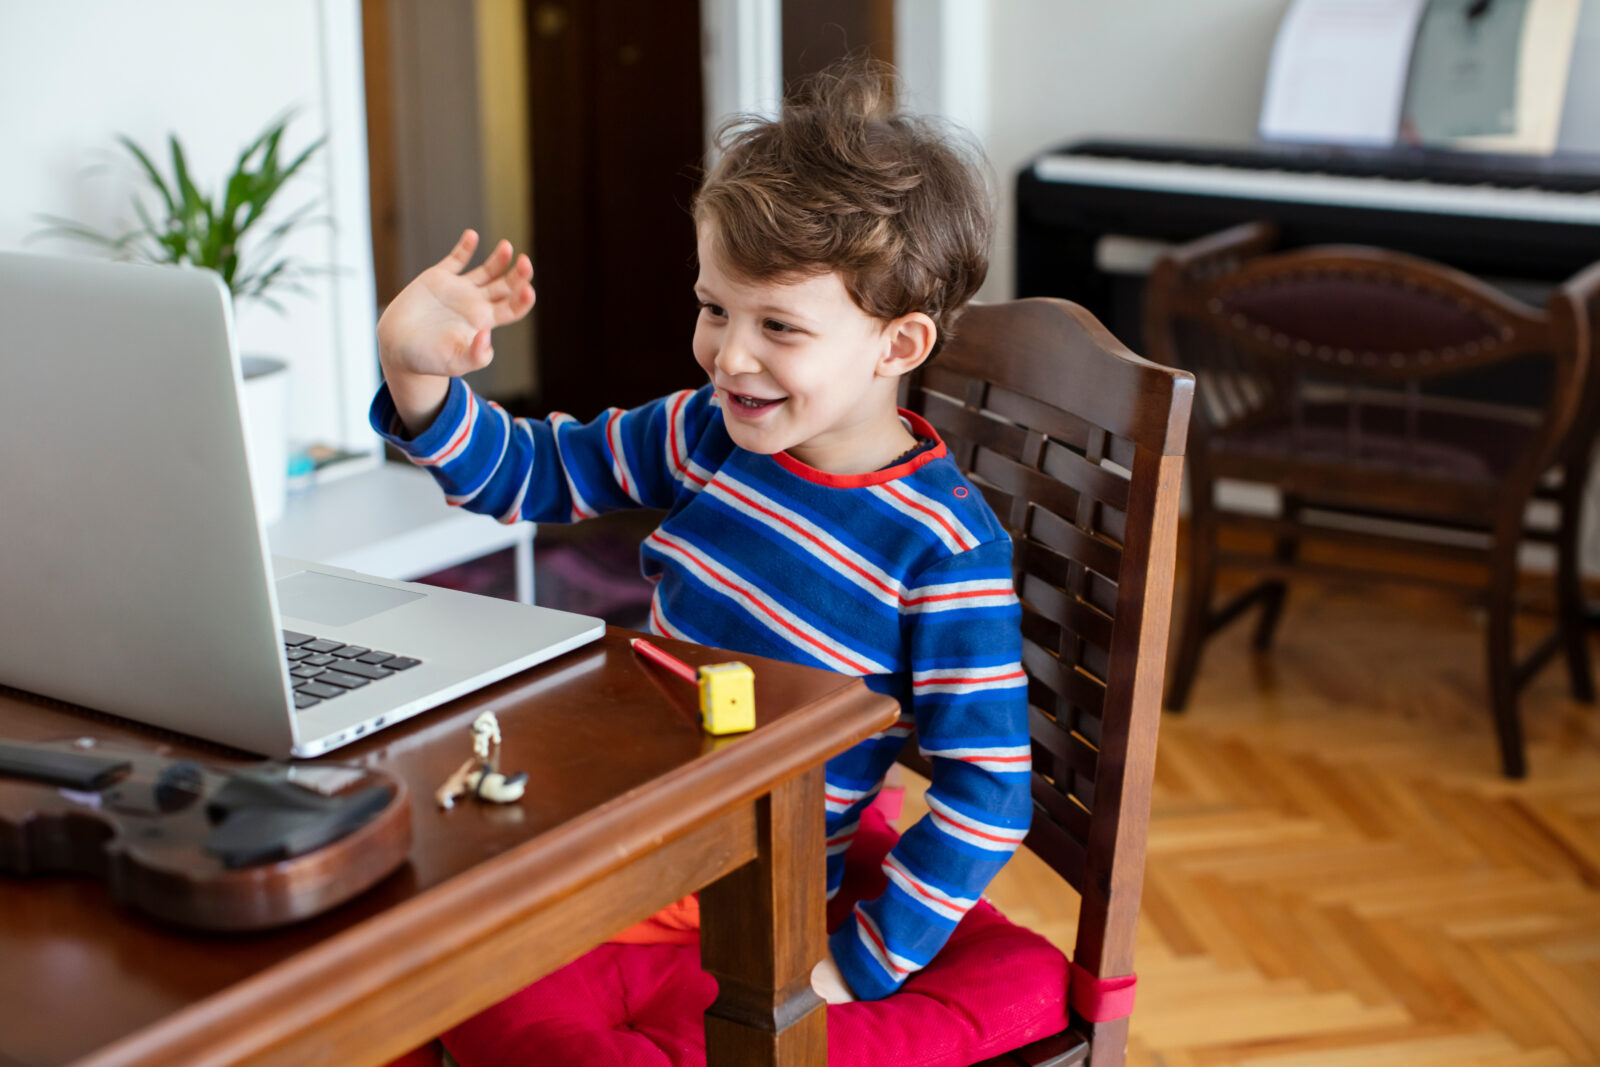 How to Run Your Online Preschool Business